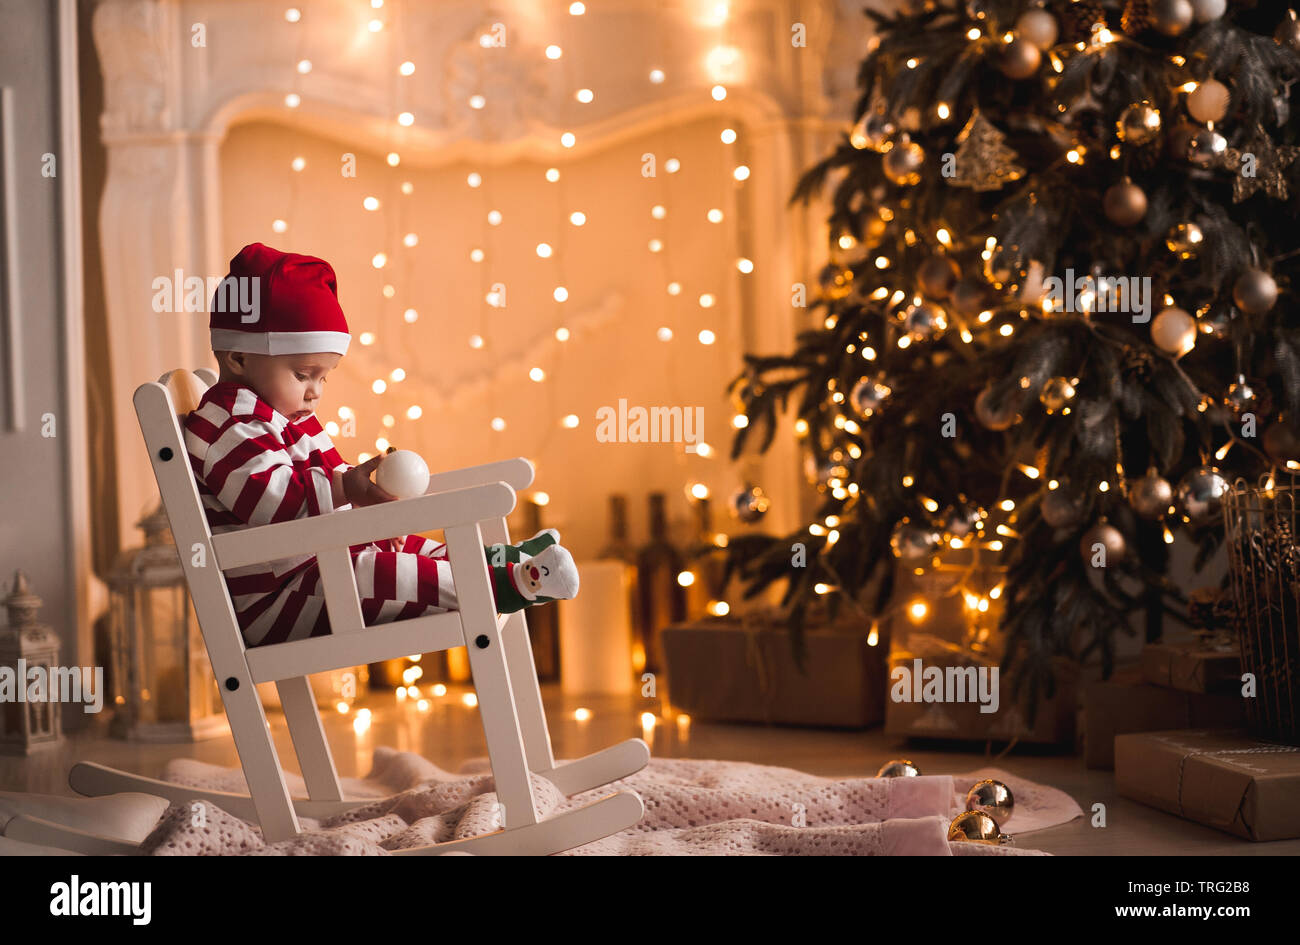 Bebé de 1 año de edad vistiendo traje de santa claus sentado en una  mecedora con árbol de Navidad y luces de fondo en la habitación. Feliz  Navidad. Holiday seaso Fotografía de